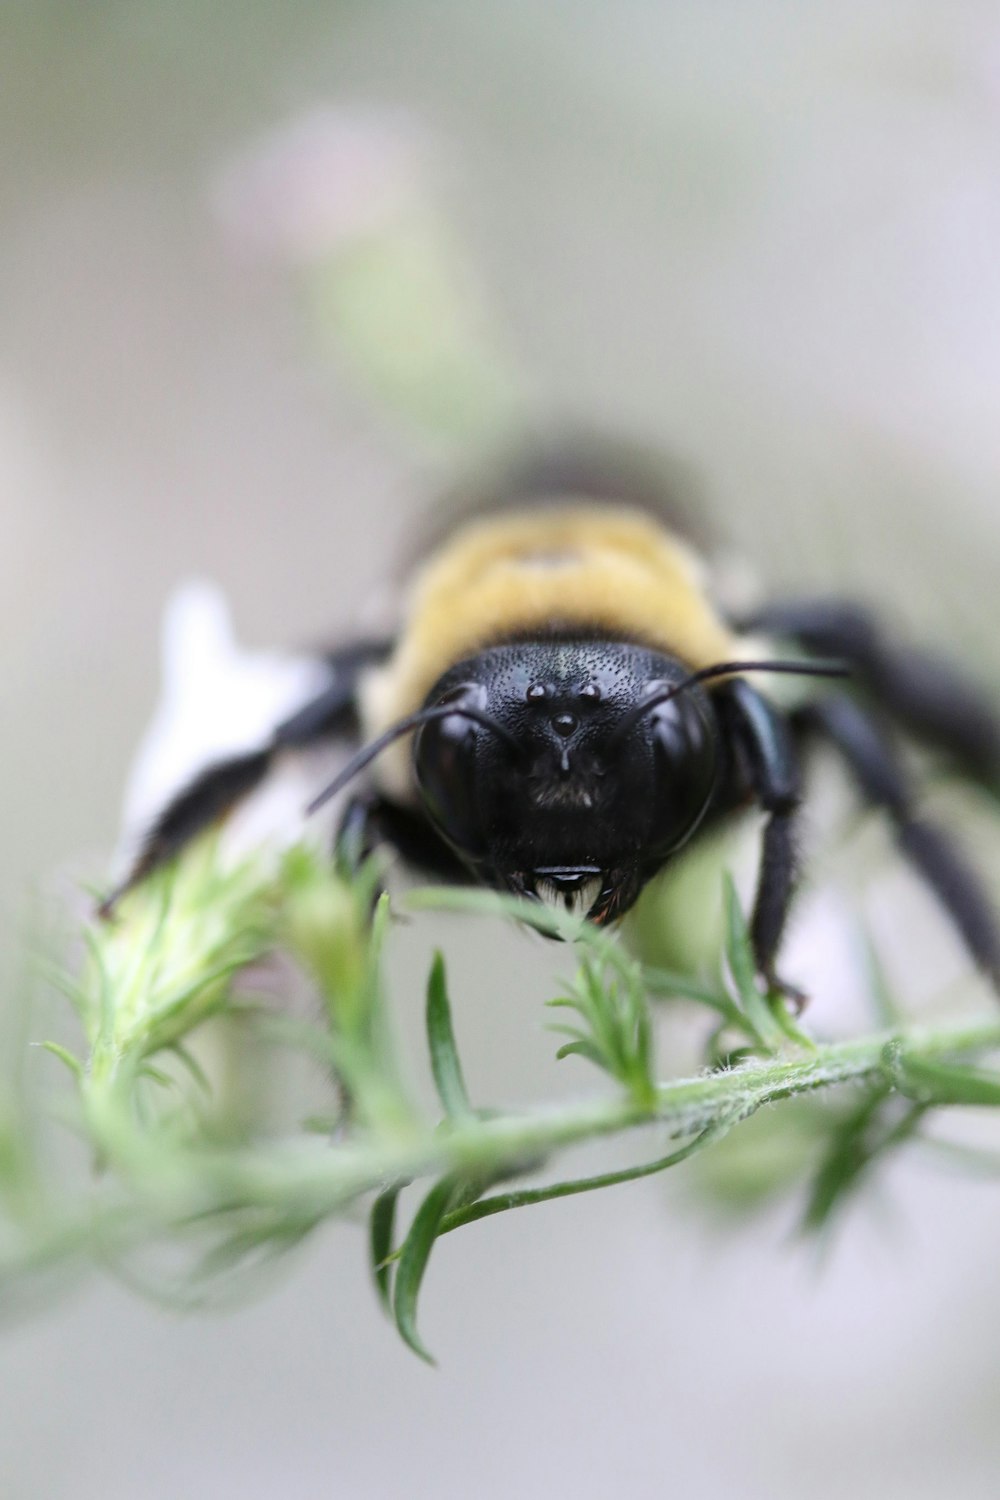 꿀벌의 틸트 시프트 렌즈 사진